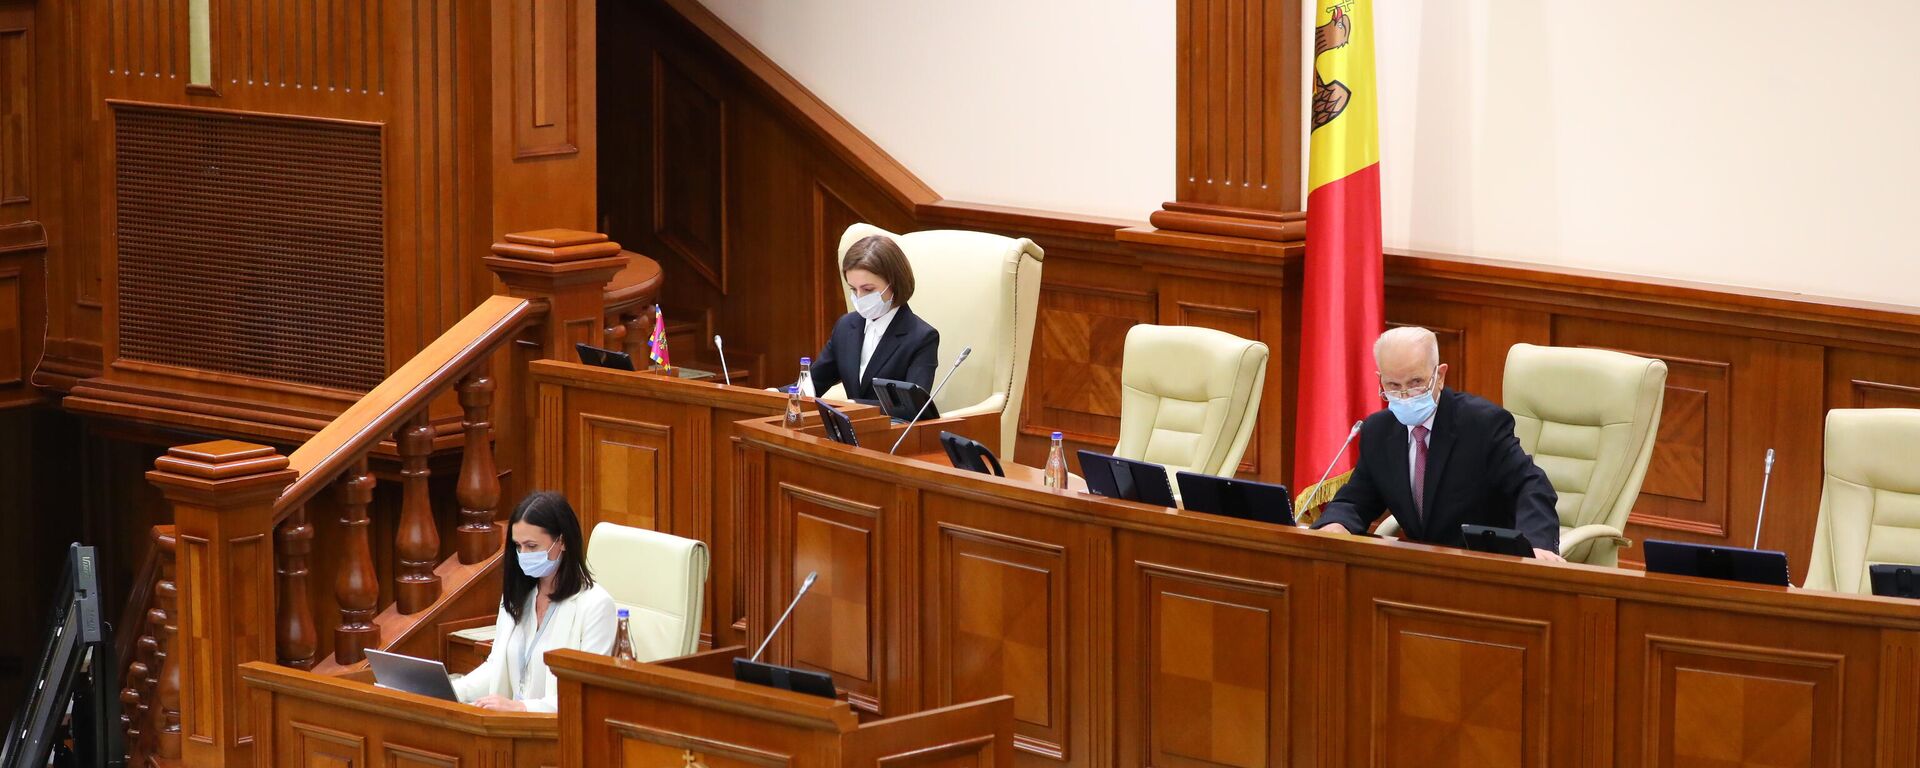 Ședința de constituire a Parlamentului de Legislatura a XI-a - 26 iulie 2021  - Sputnik Молдова, 1920, 26.07.2021